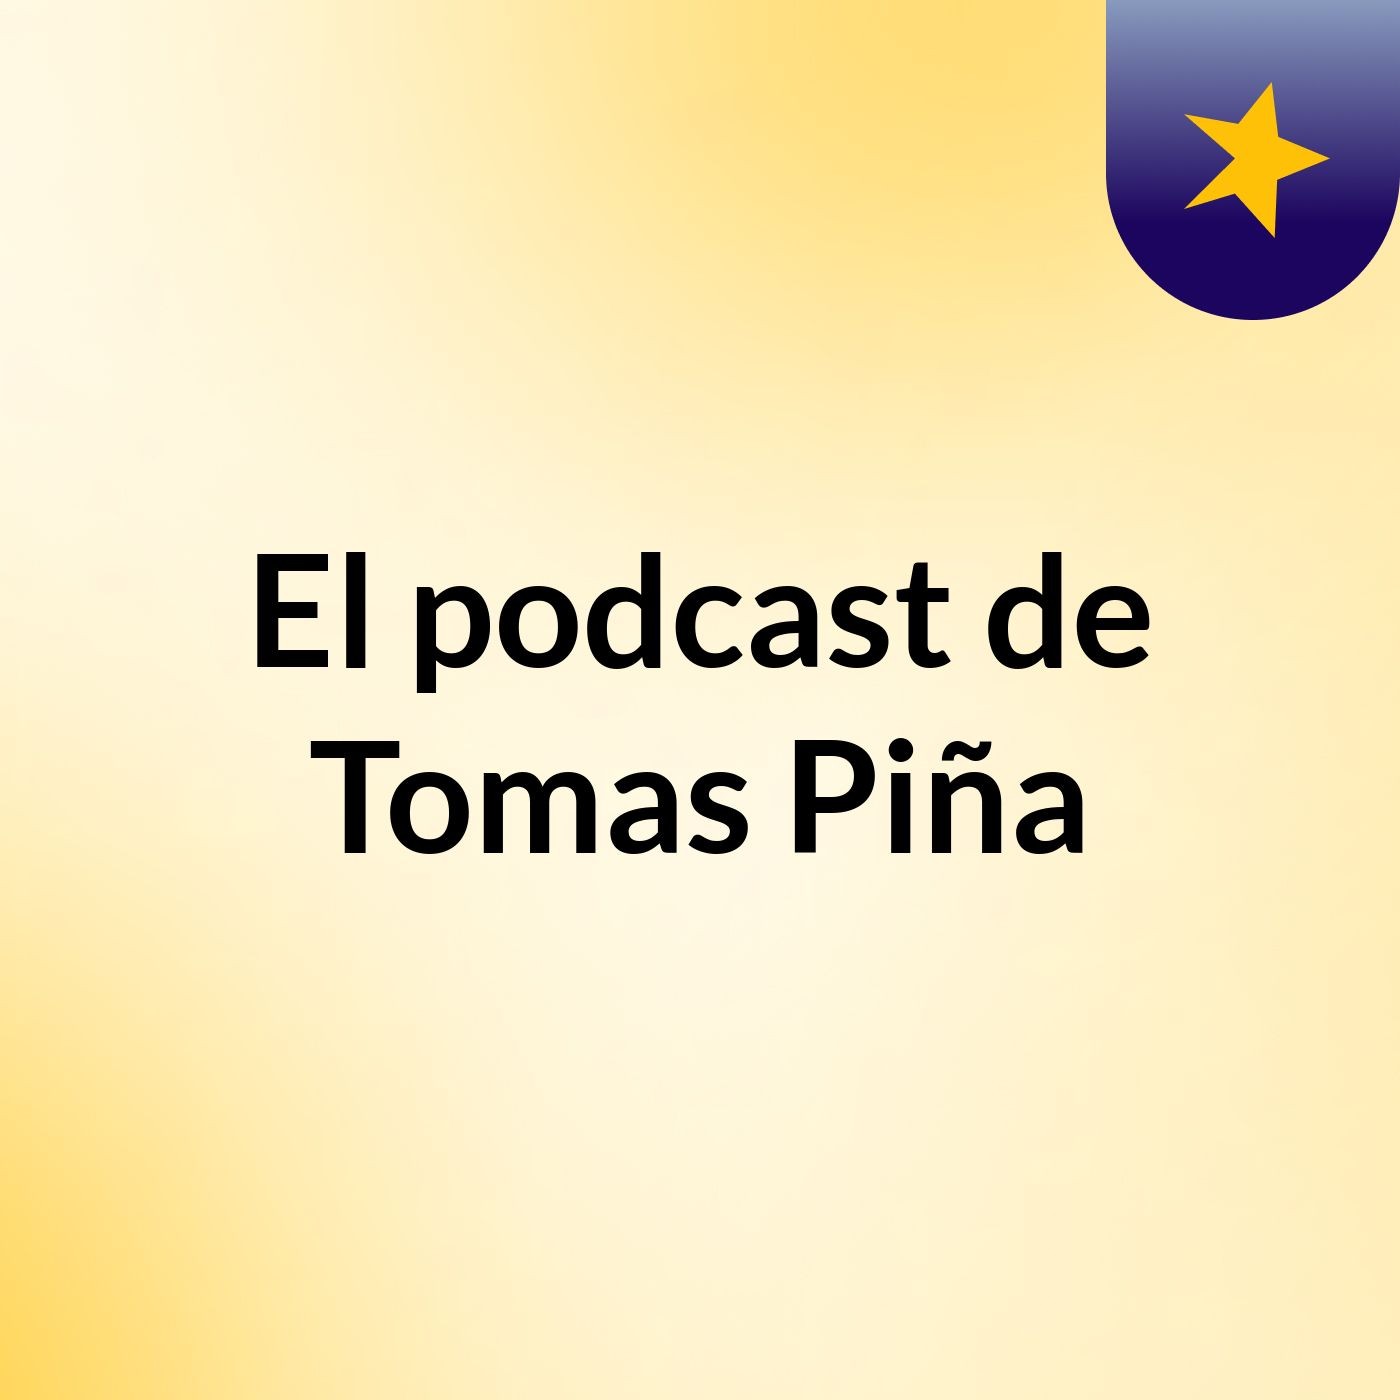 El podcast de Tomas Piña